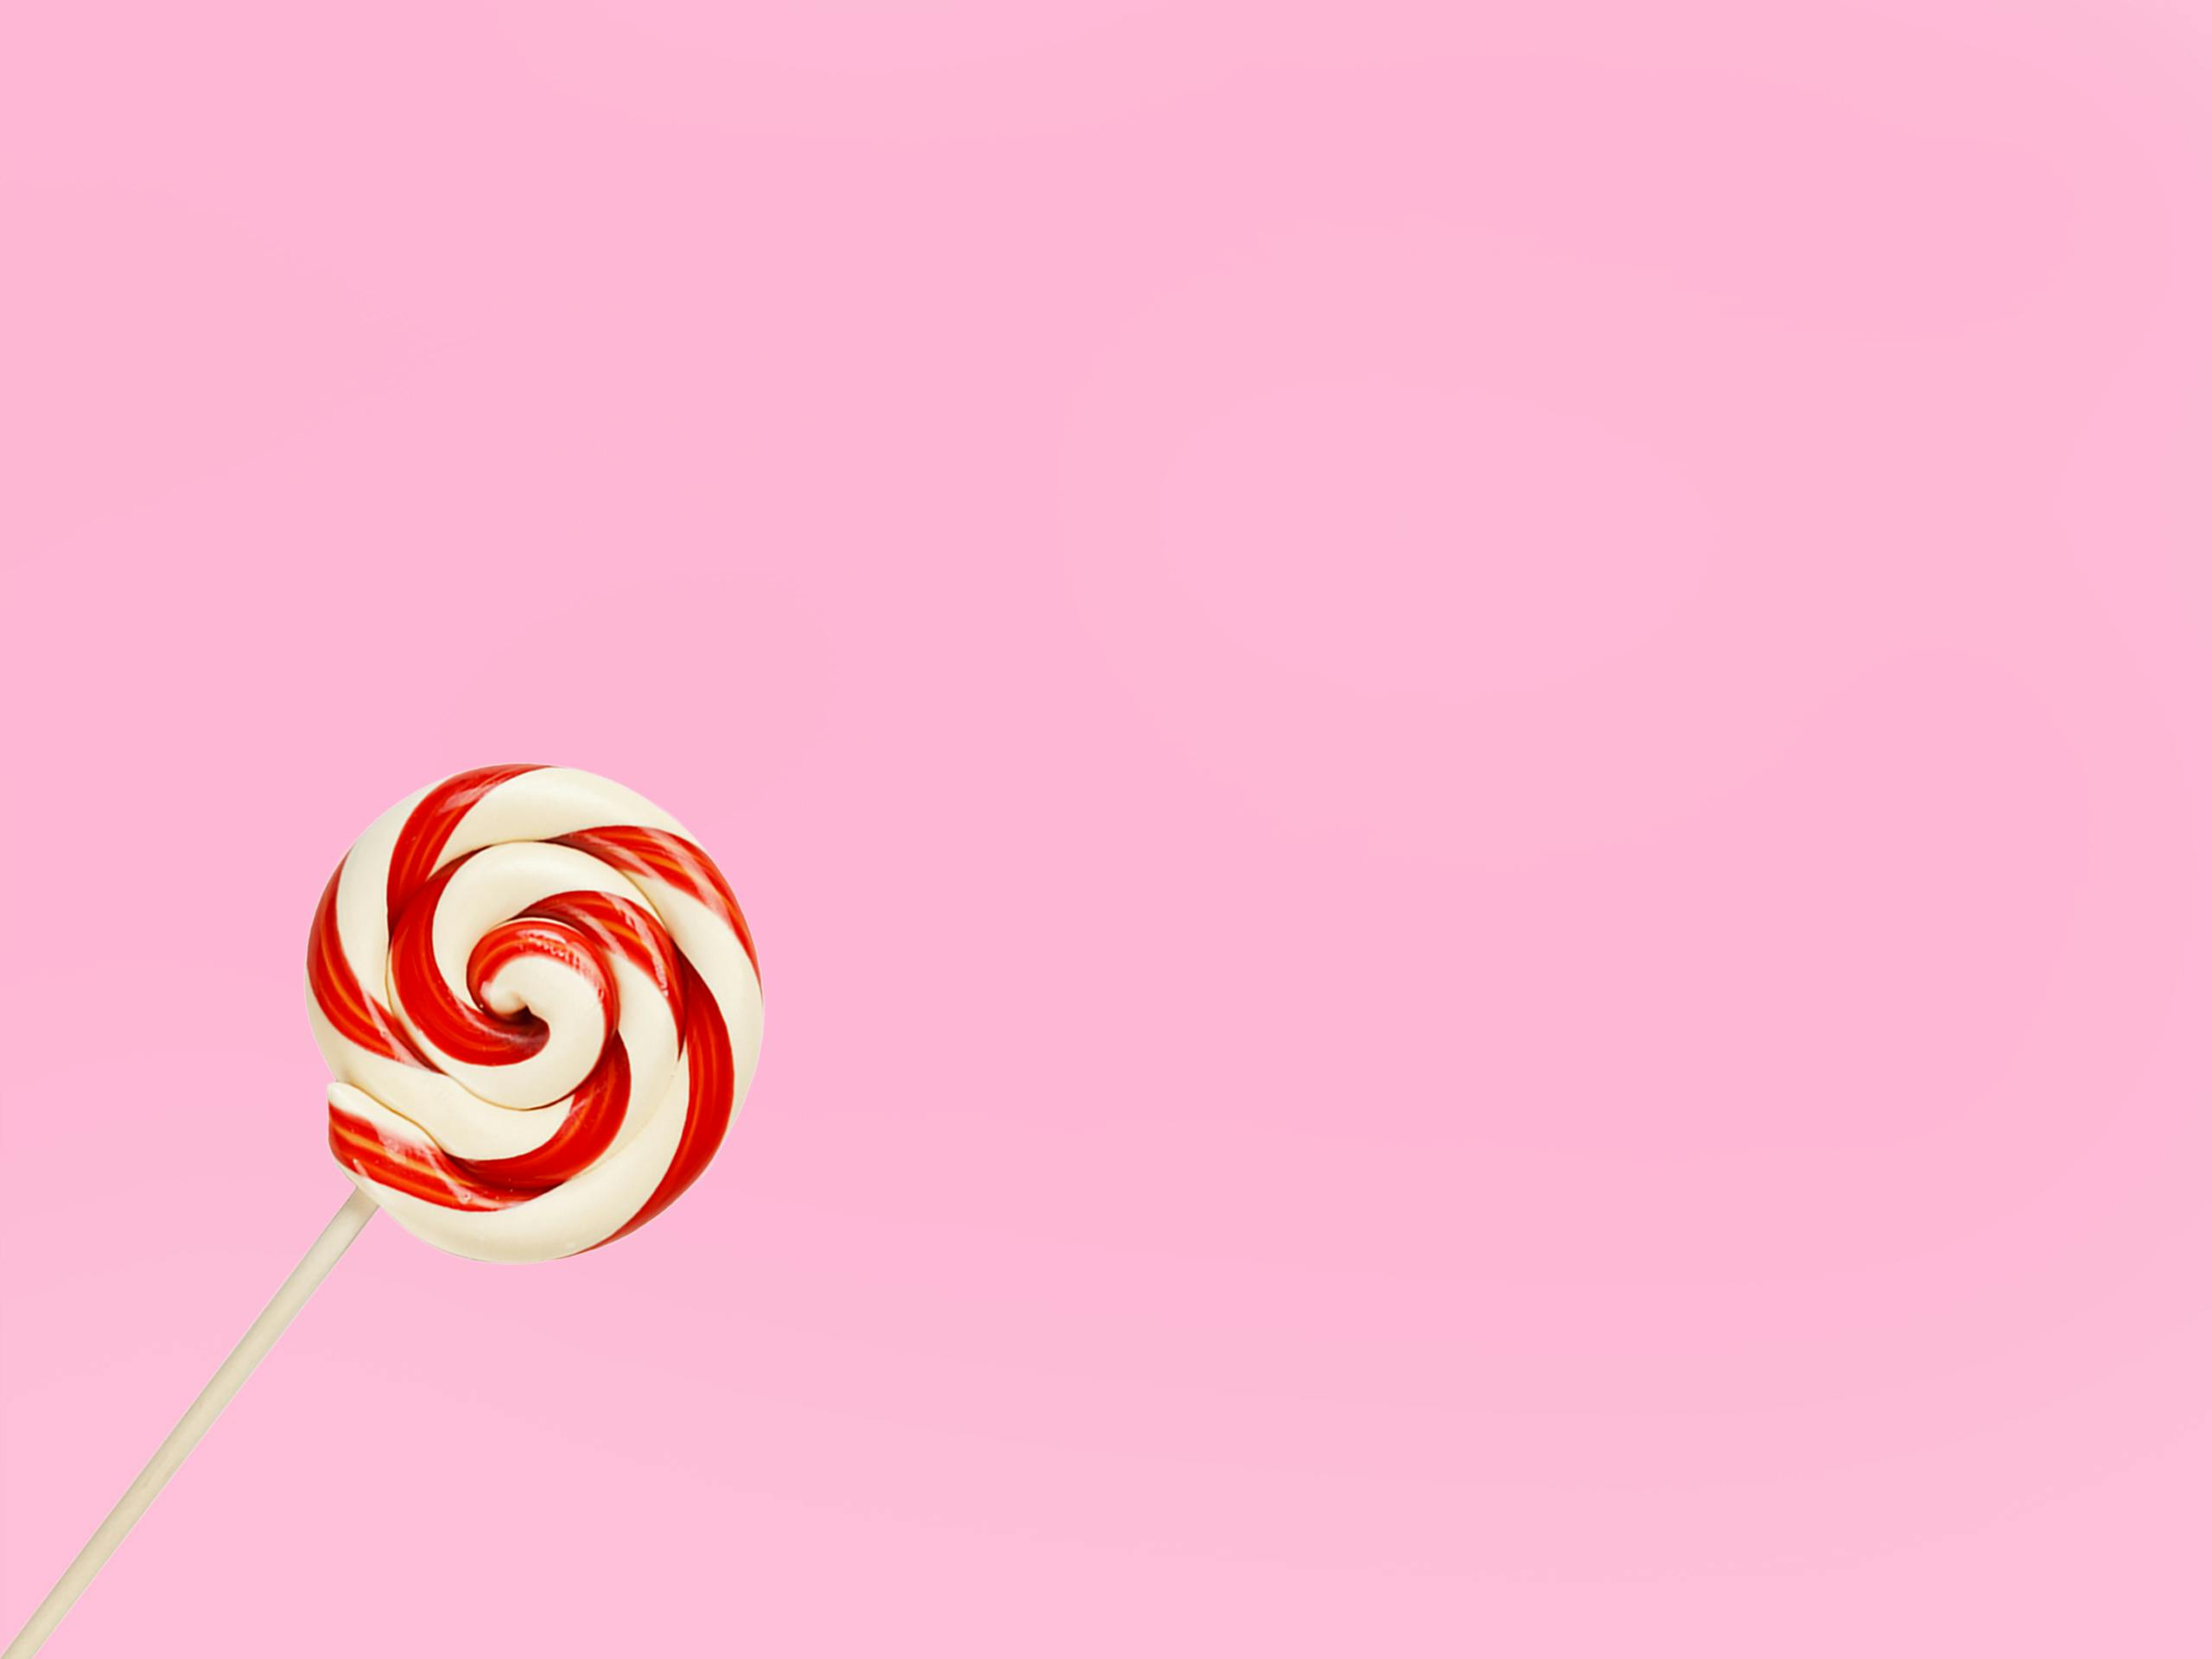 Đồ họa kẹo kẹo Lollipop Hình ảnh minh họa - nền tròn png tải về - Miễn phí  trong suốt Chong Chóng png Tải về.